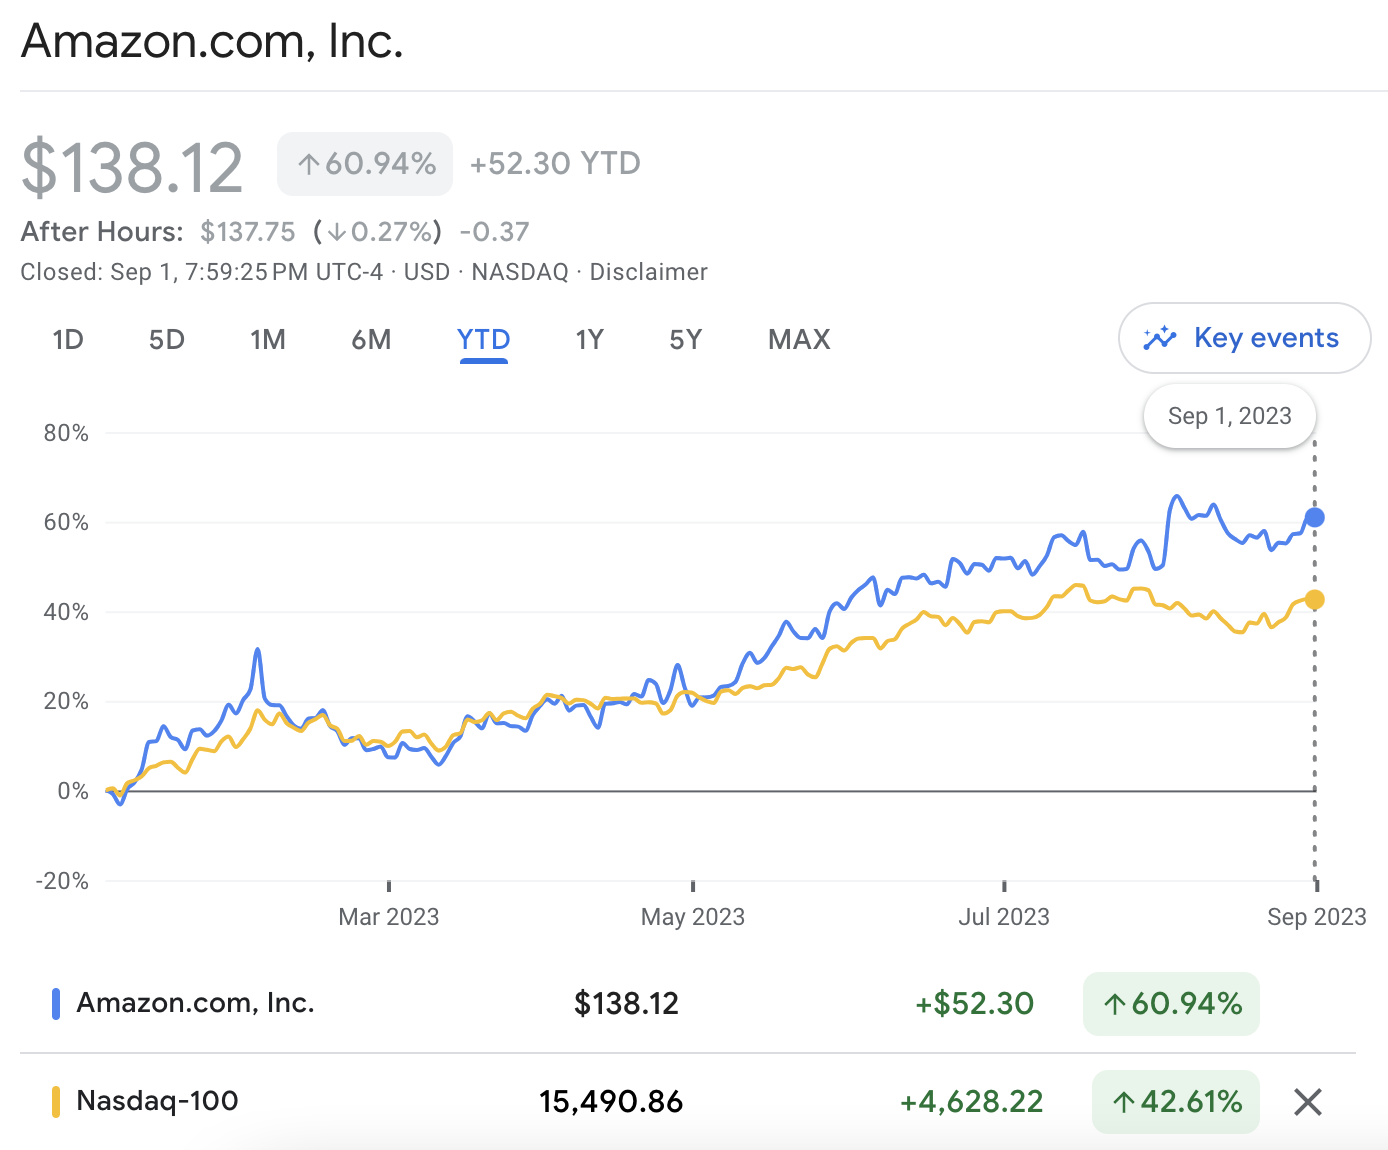 Amazon shares vs NASDAQ 100